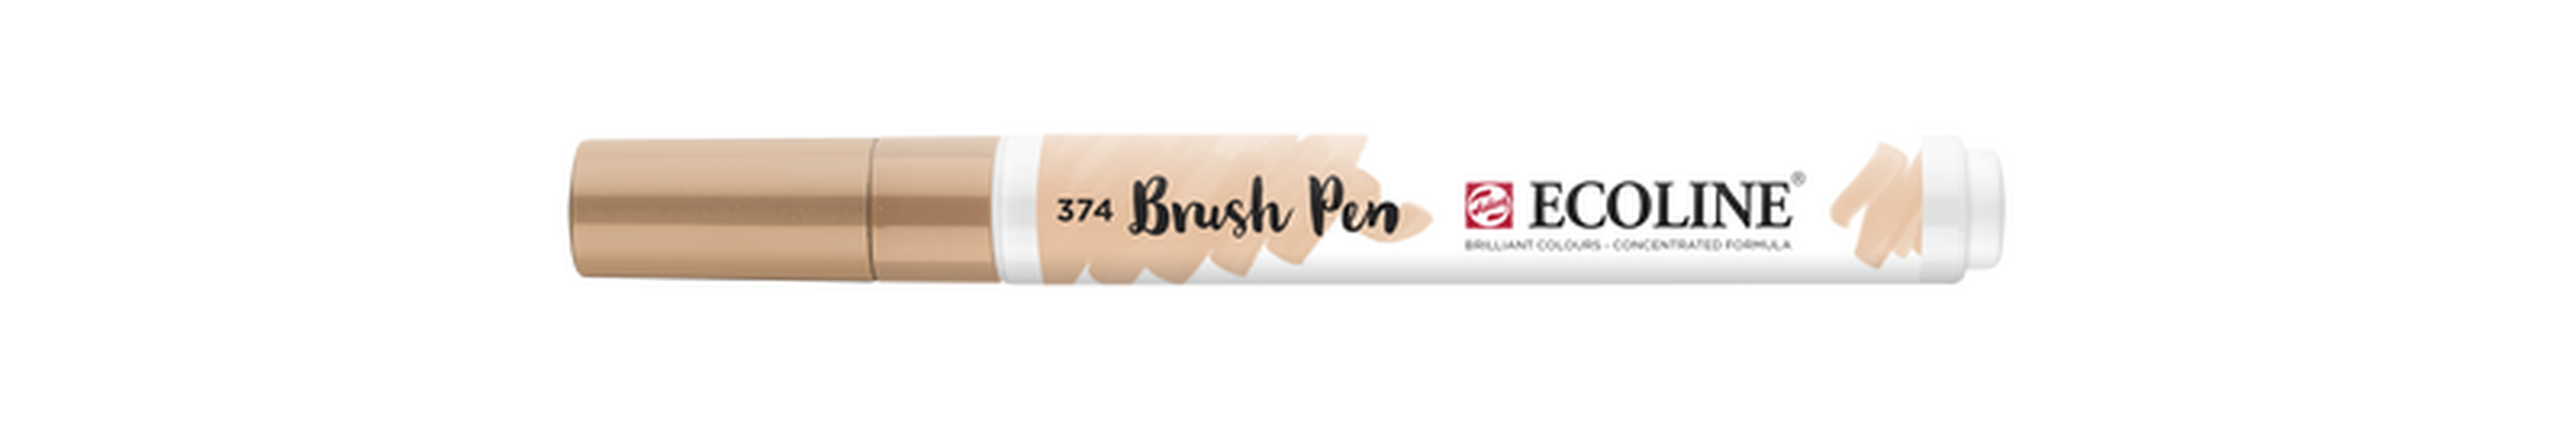 Talens Brush Pen Ecoline Number 374 Color Pink Beige